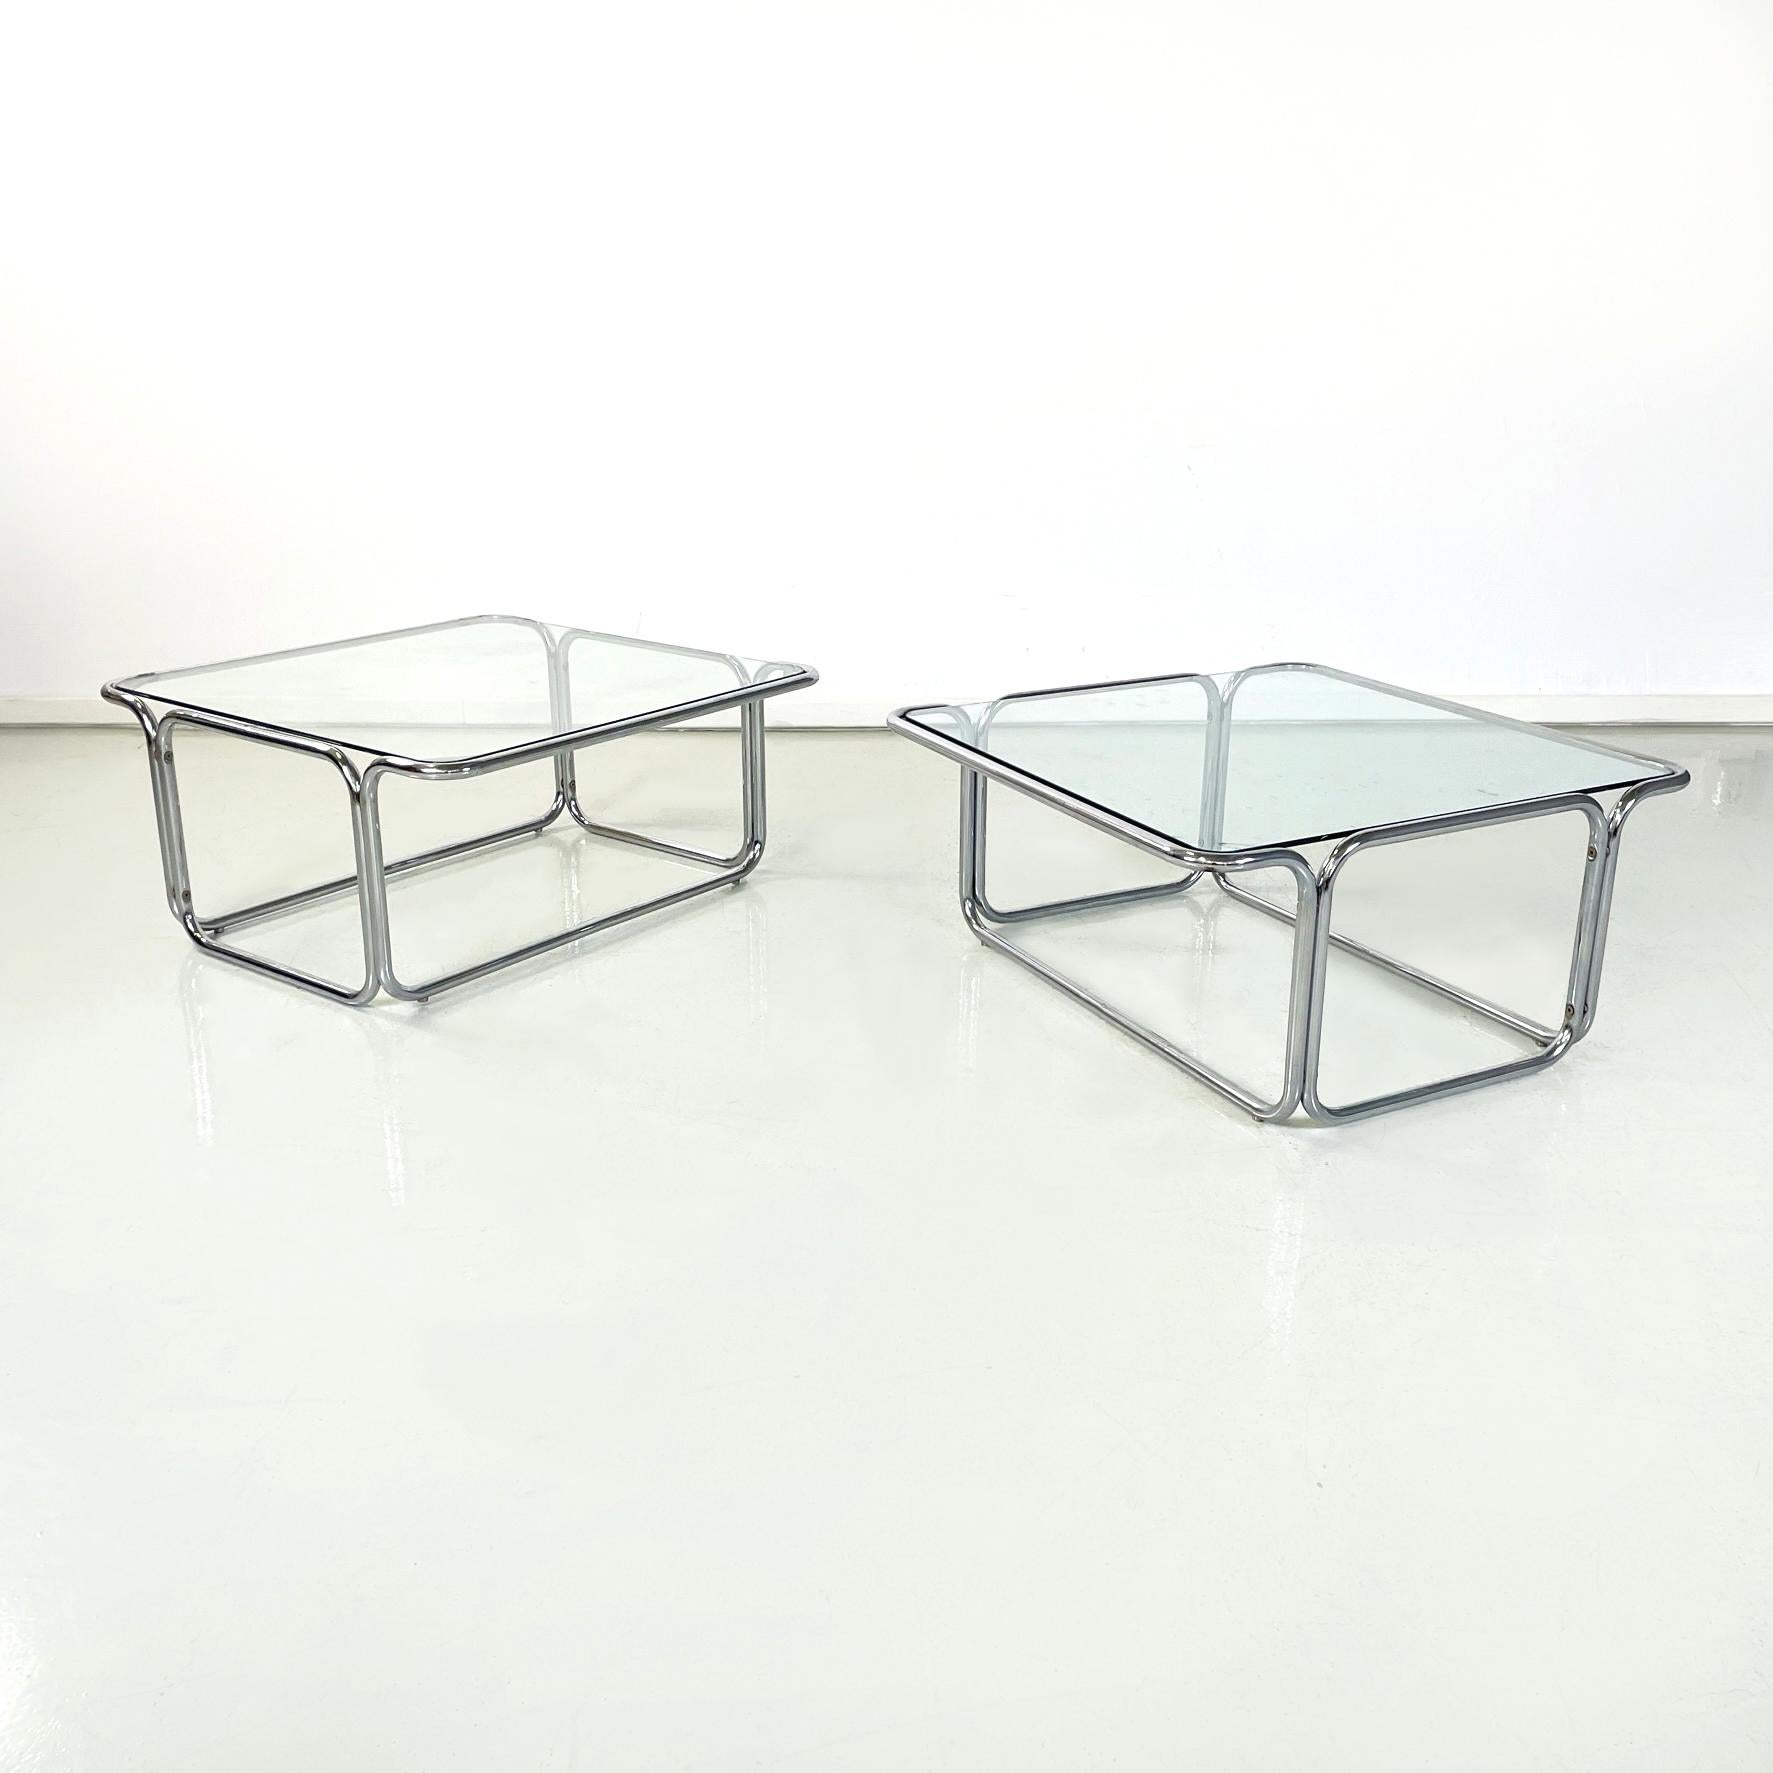 Tables basses carrées italiennes modernes en verre et acier chromé, années 1970
Paire de tables basses avec plateau carré en verre. La structure est entièrement en acier tubulaire chromé. L'une des deux tables est dotée d'un support supplémentaire